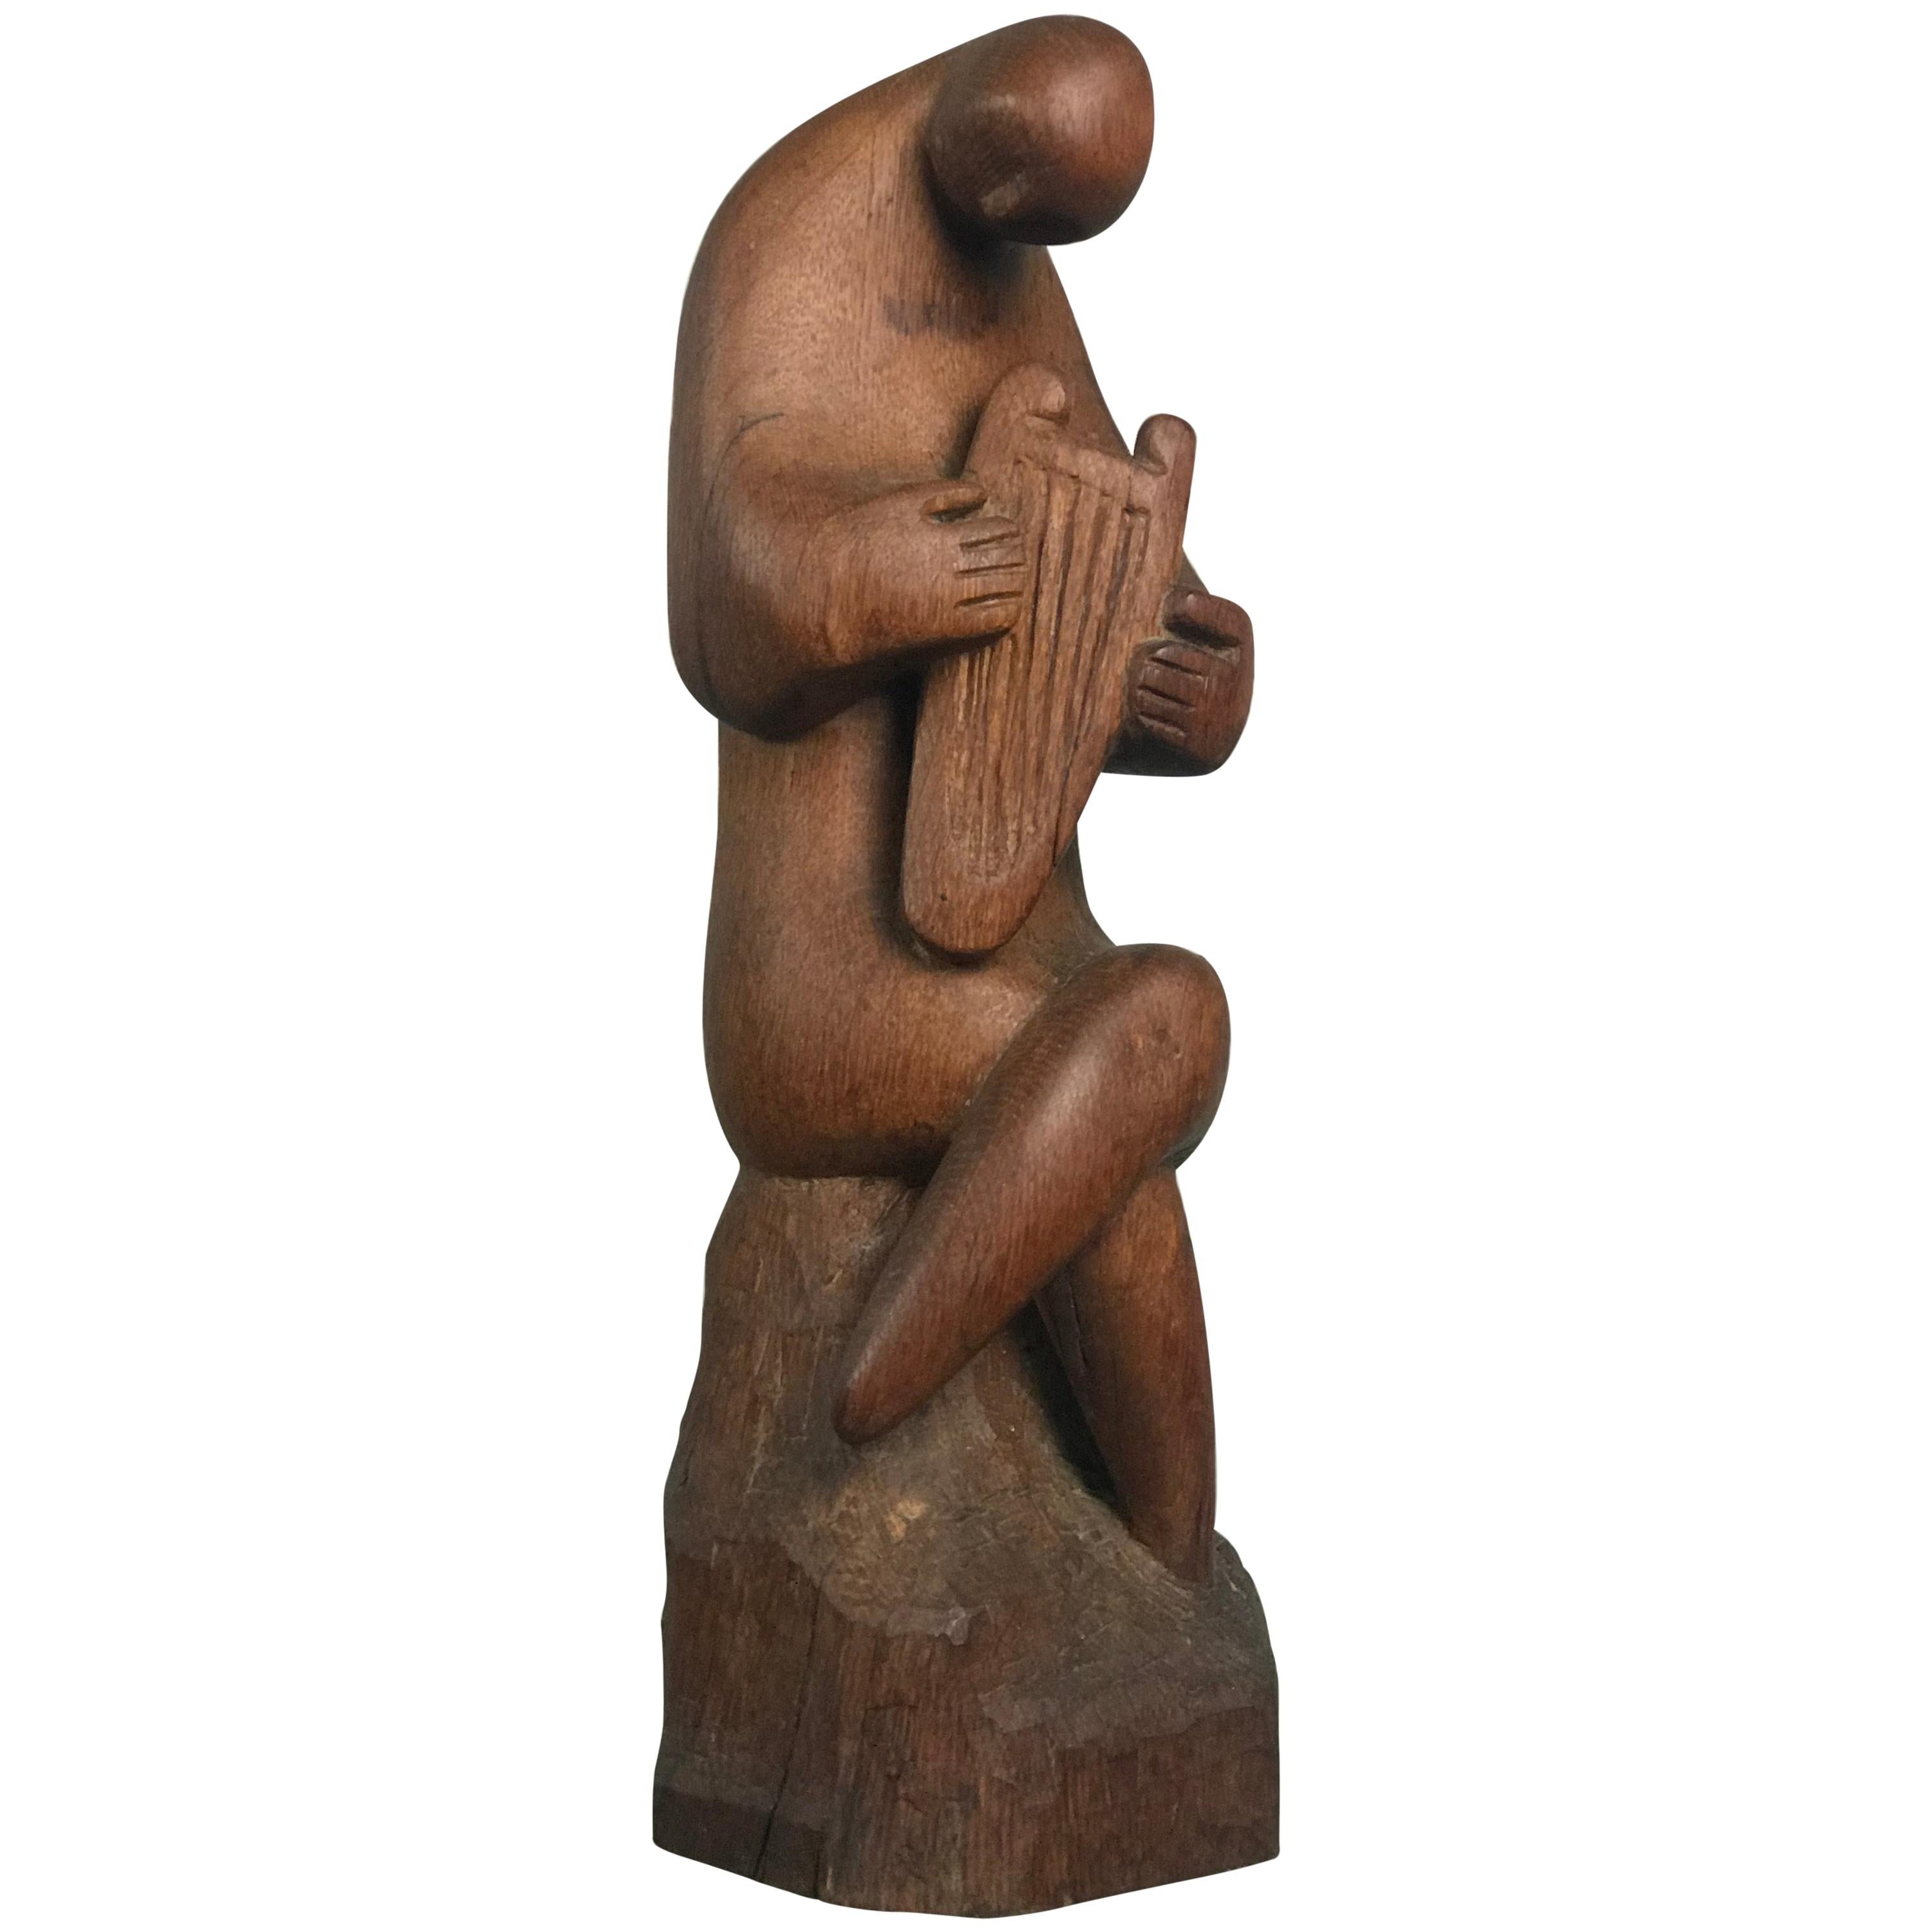 Modernist Wood Sculpture Harp Player Musician Figure Mid-Century Modern Art